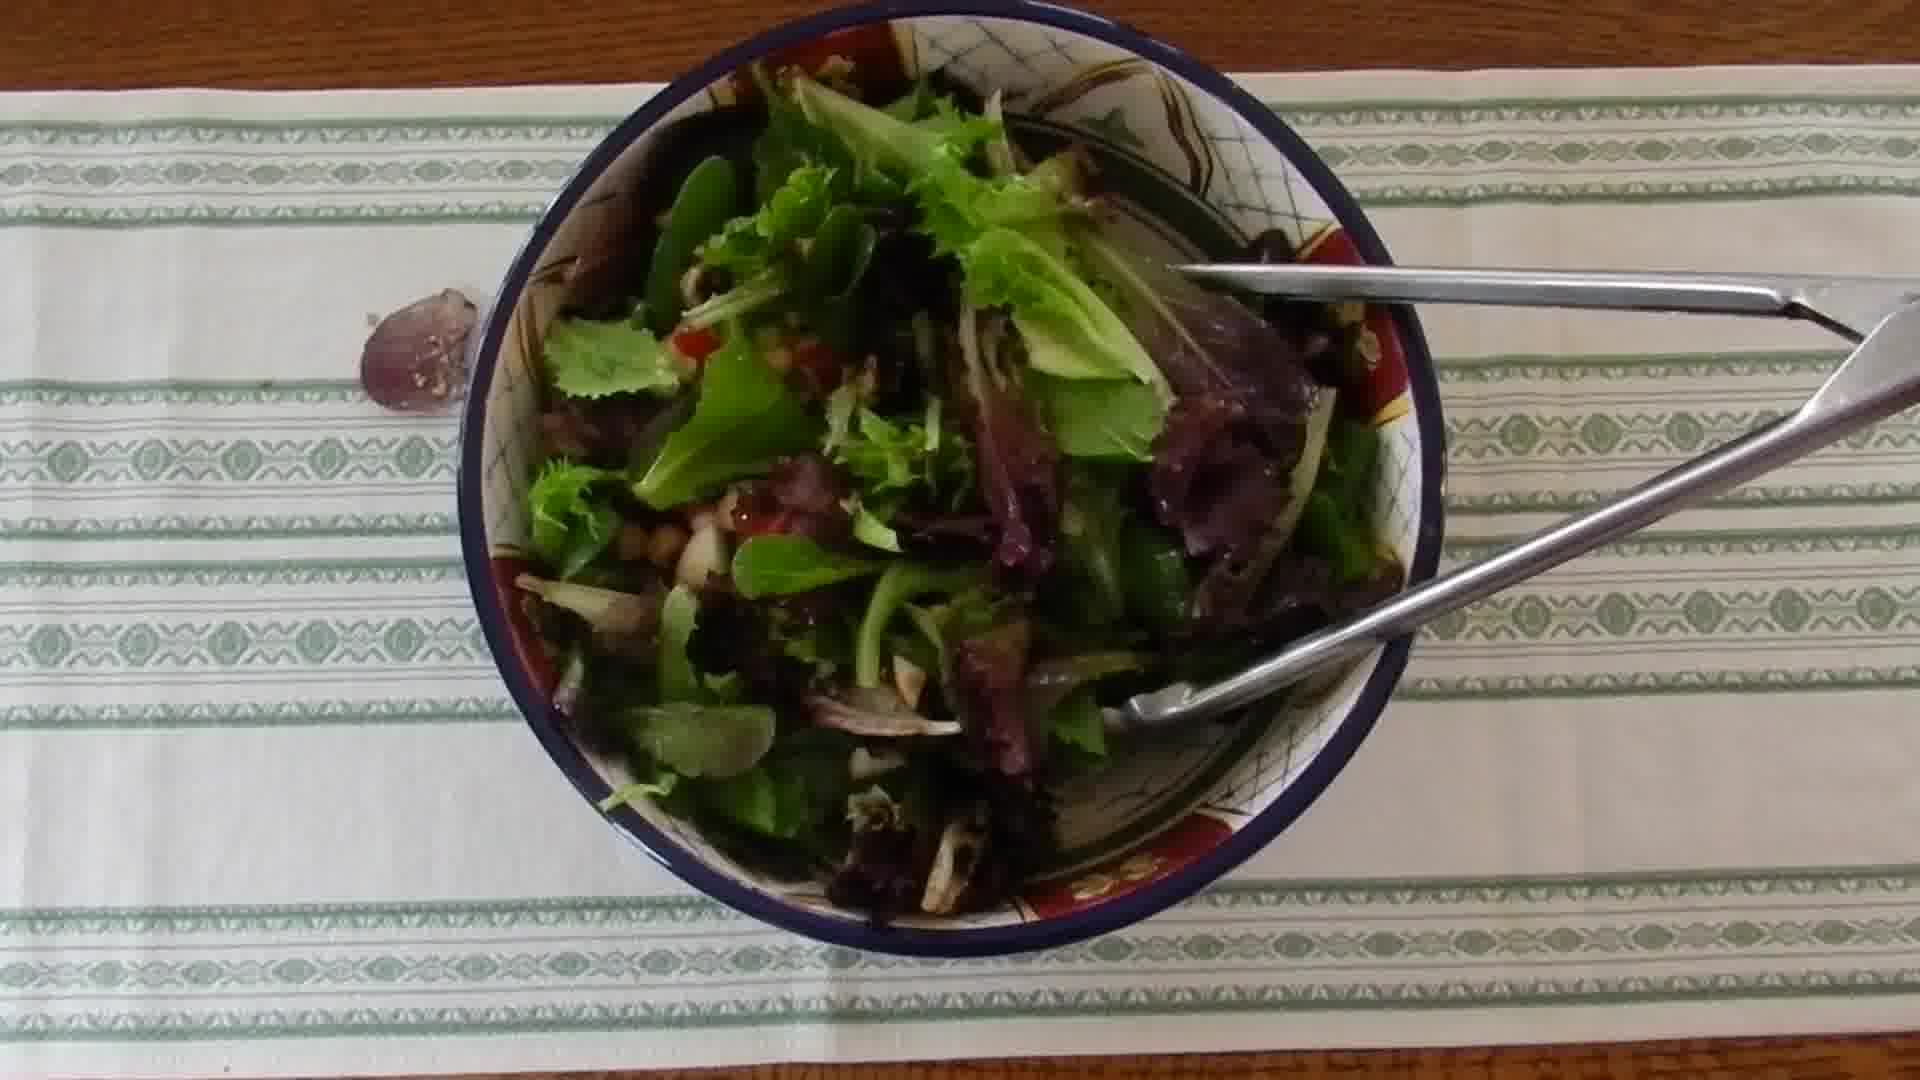  salads